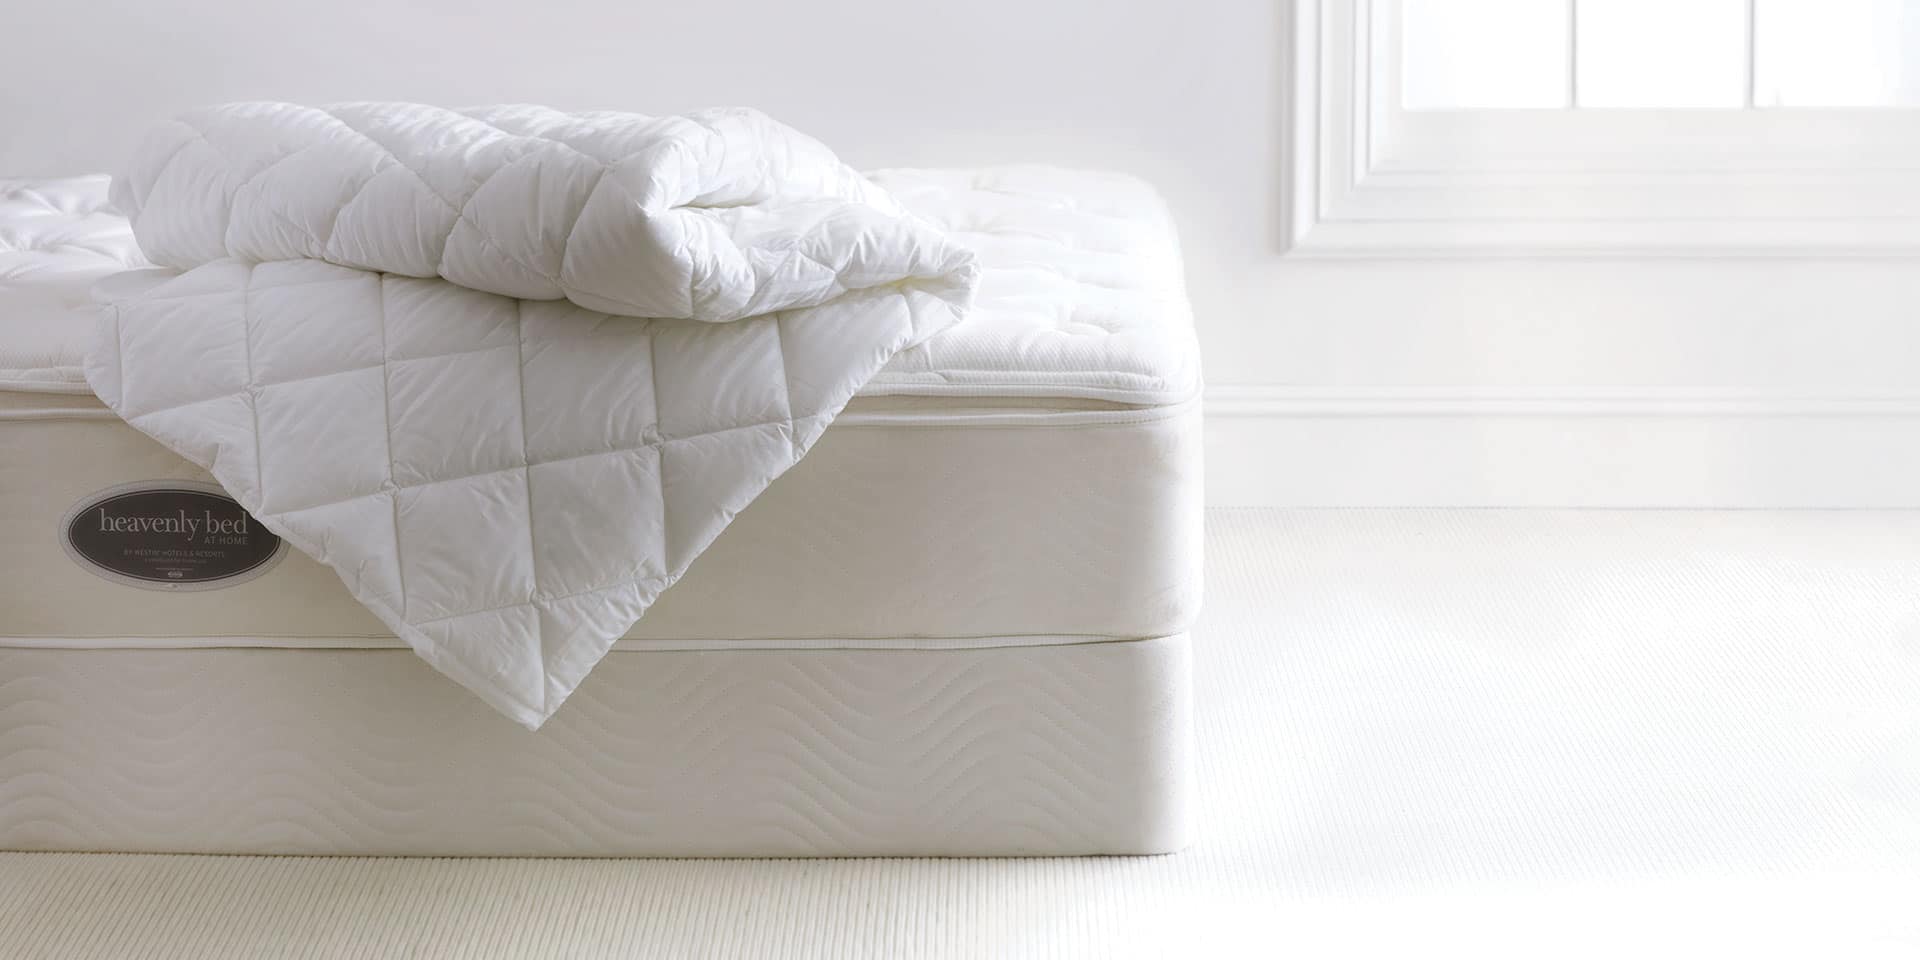 marriott foam mattress review